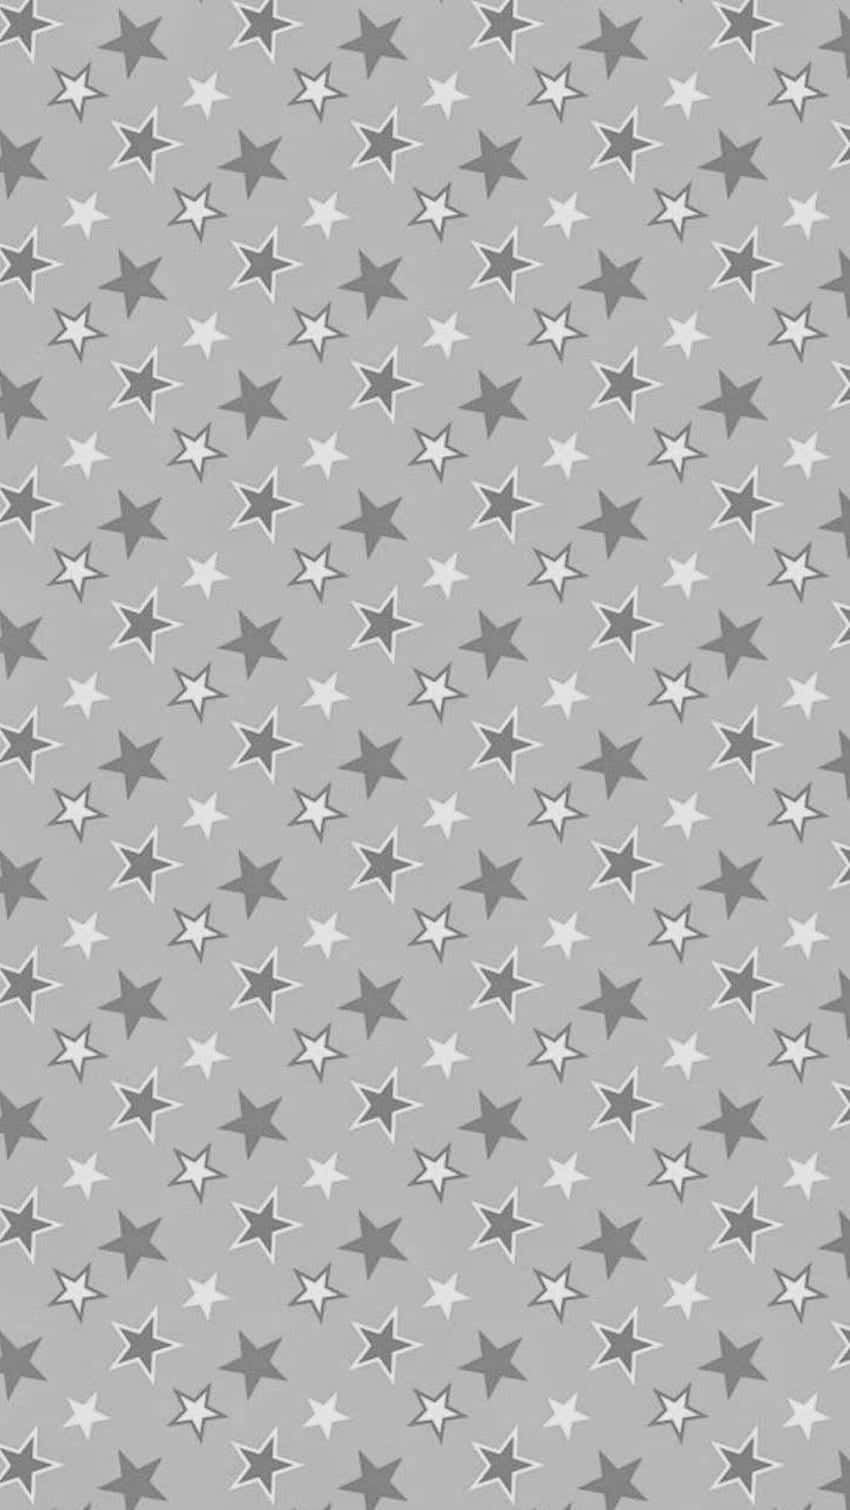 Artegráfica De Estrelas Fofas Em Branco E Cinza. Papel de Parede